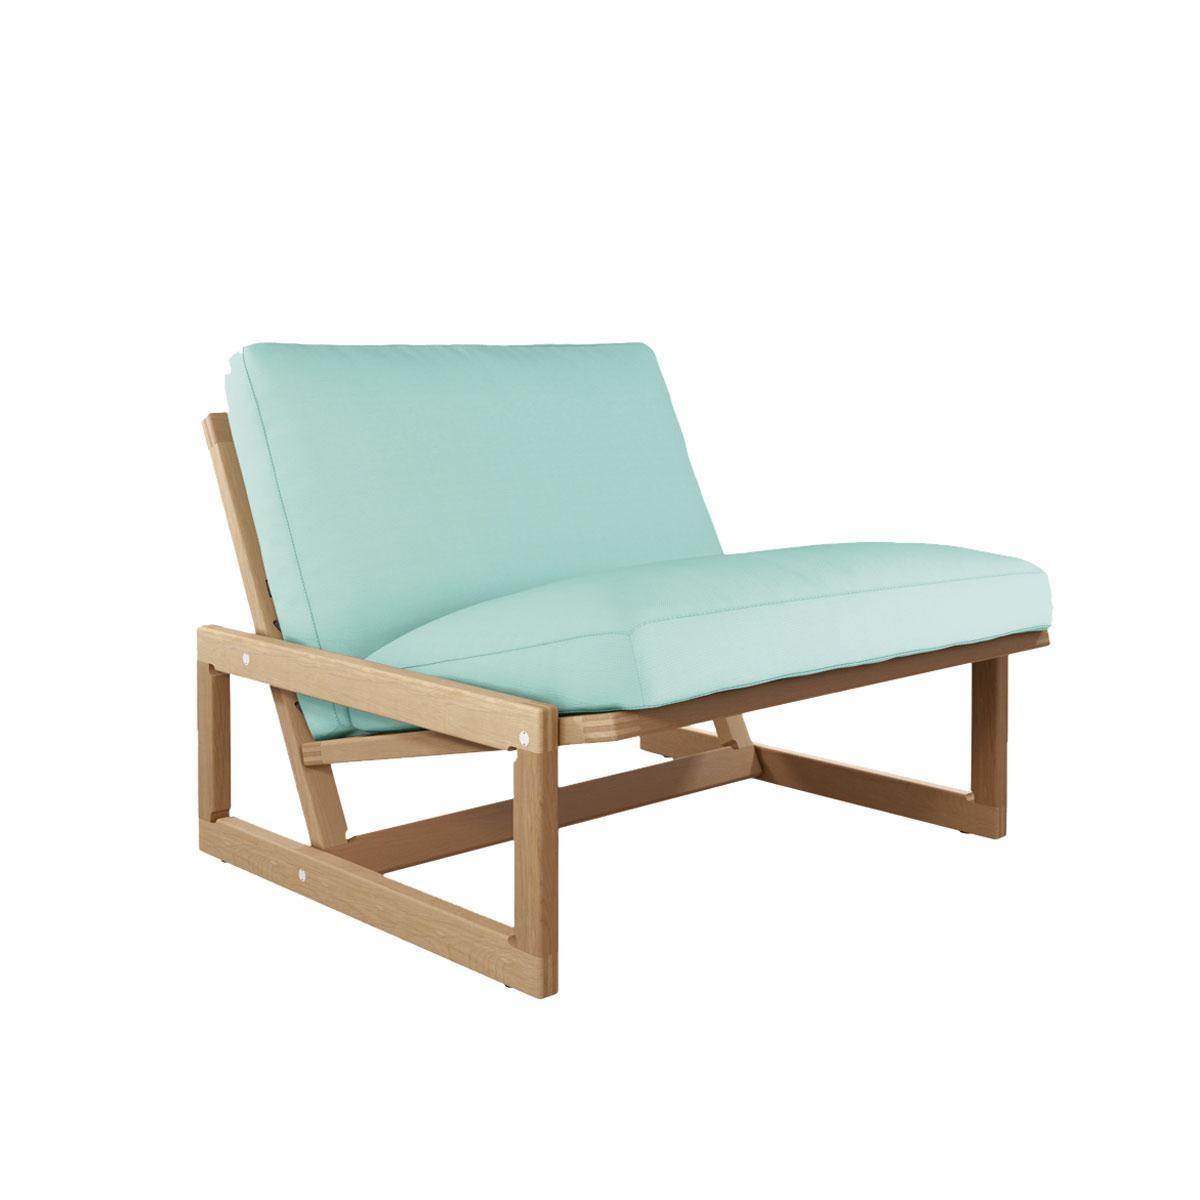 De Carlotta-stoel, ontworpen door Afra en Tobia Scarpa in 1967 krijgt een outdoorvariant in teak met kussens van gerecycleerde petflessen, Cassina. Prijs op aanvraag, cassina.com